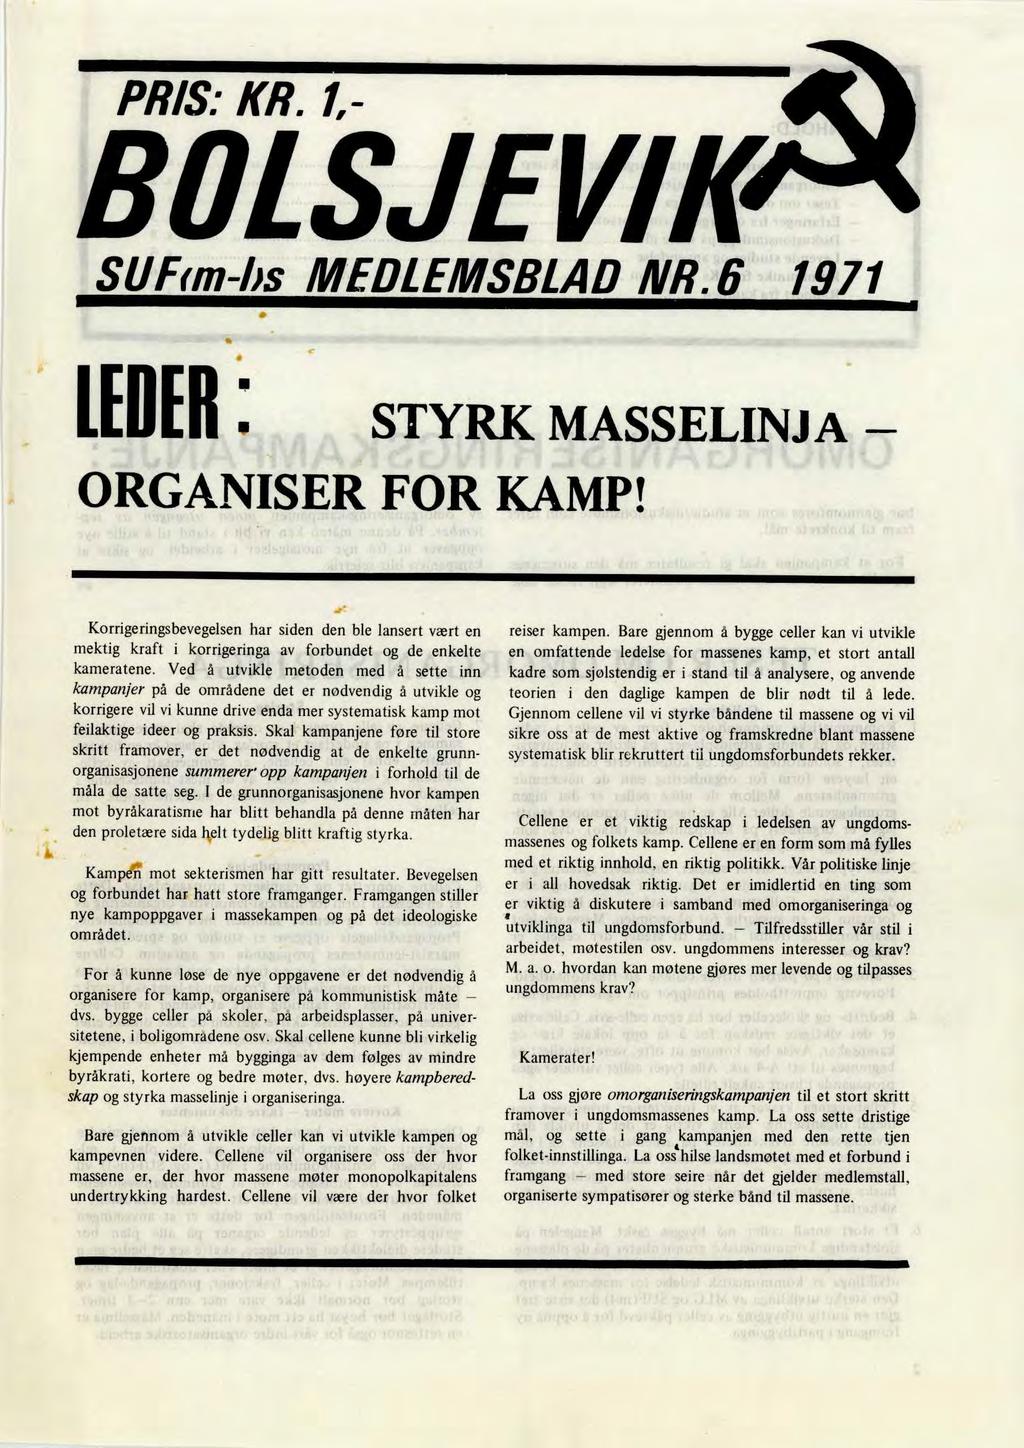 PRIS.- KR.1,- BOLSJEVIK" S11fim-lis MEDLEMSBLAD NR.6 1971 LEDER. STYRK MASSELINJ A ORGANISER FOR KAMP!